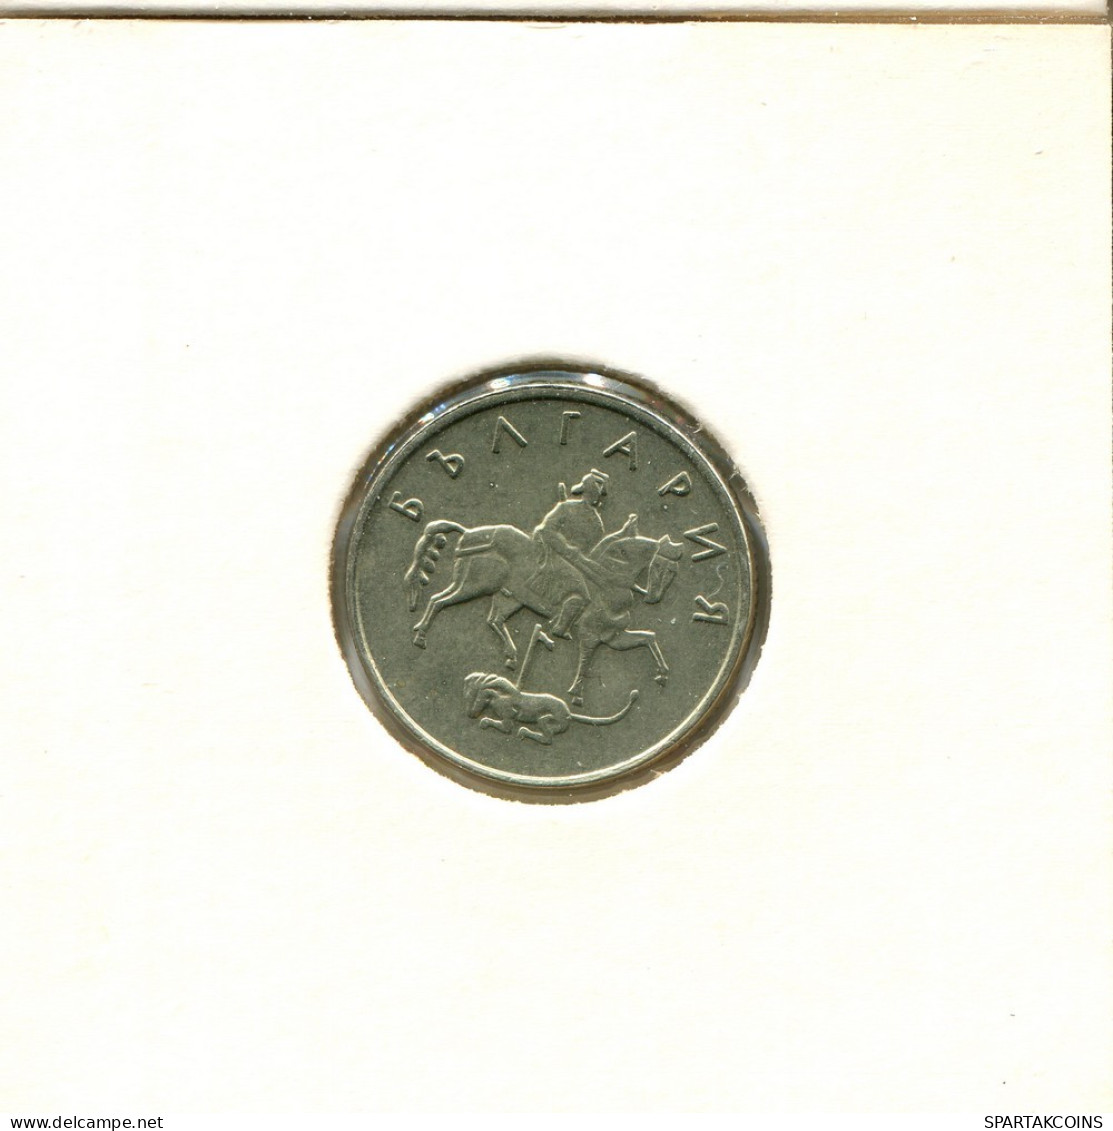 10 STOTINKI 1999 BULGARIA Moneda #AU154.E.A - Bulgarie